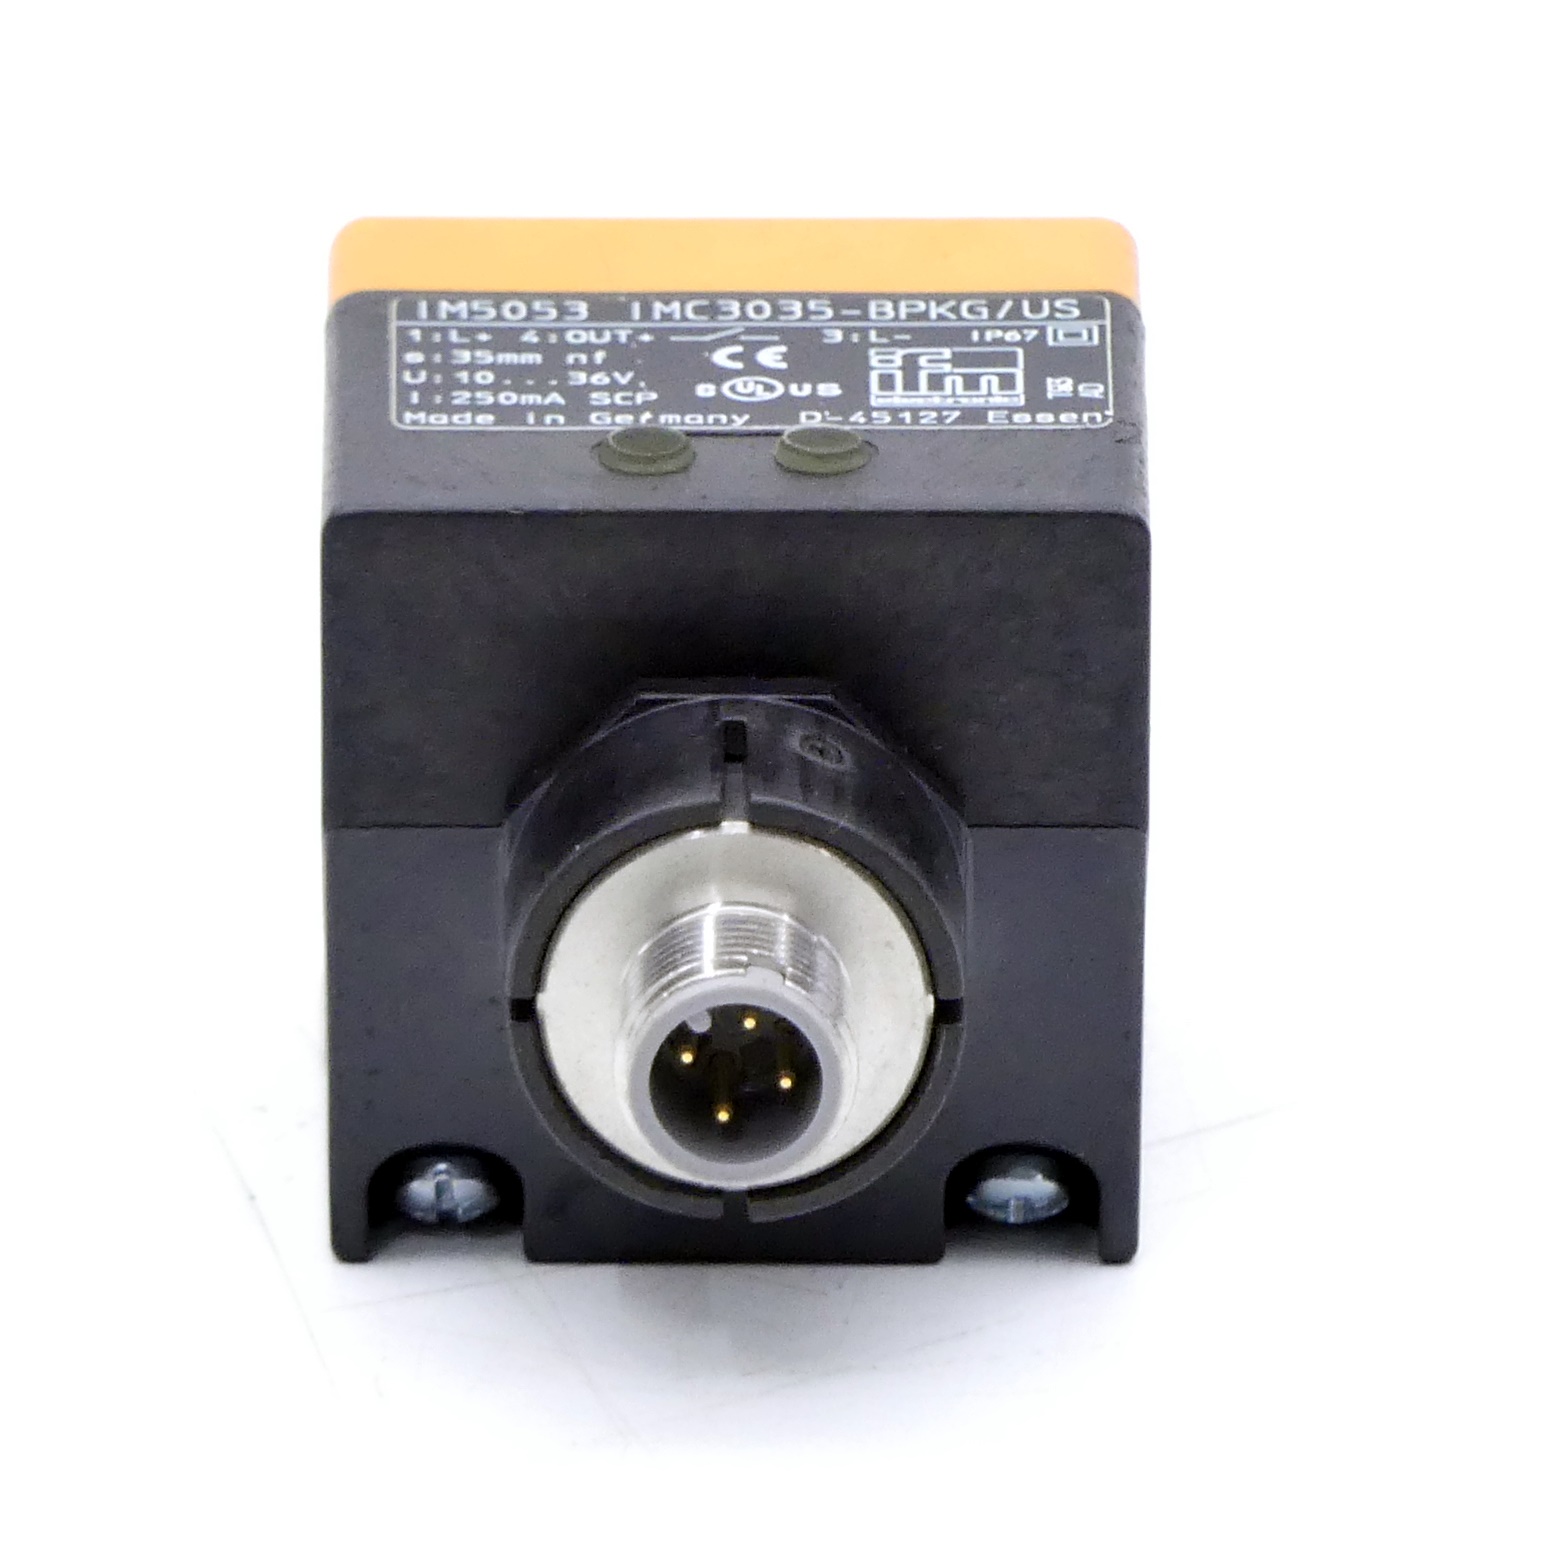 Induktiver Sensor IM5053 